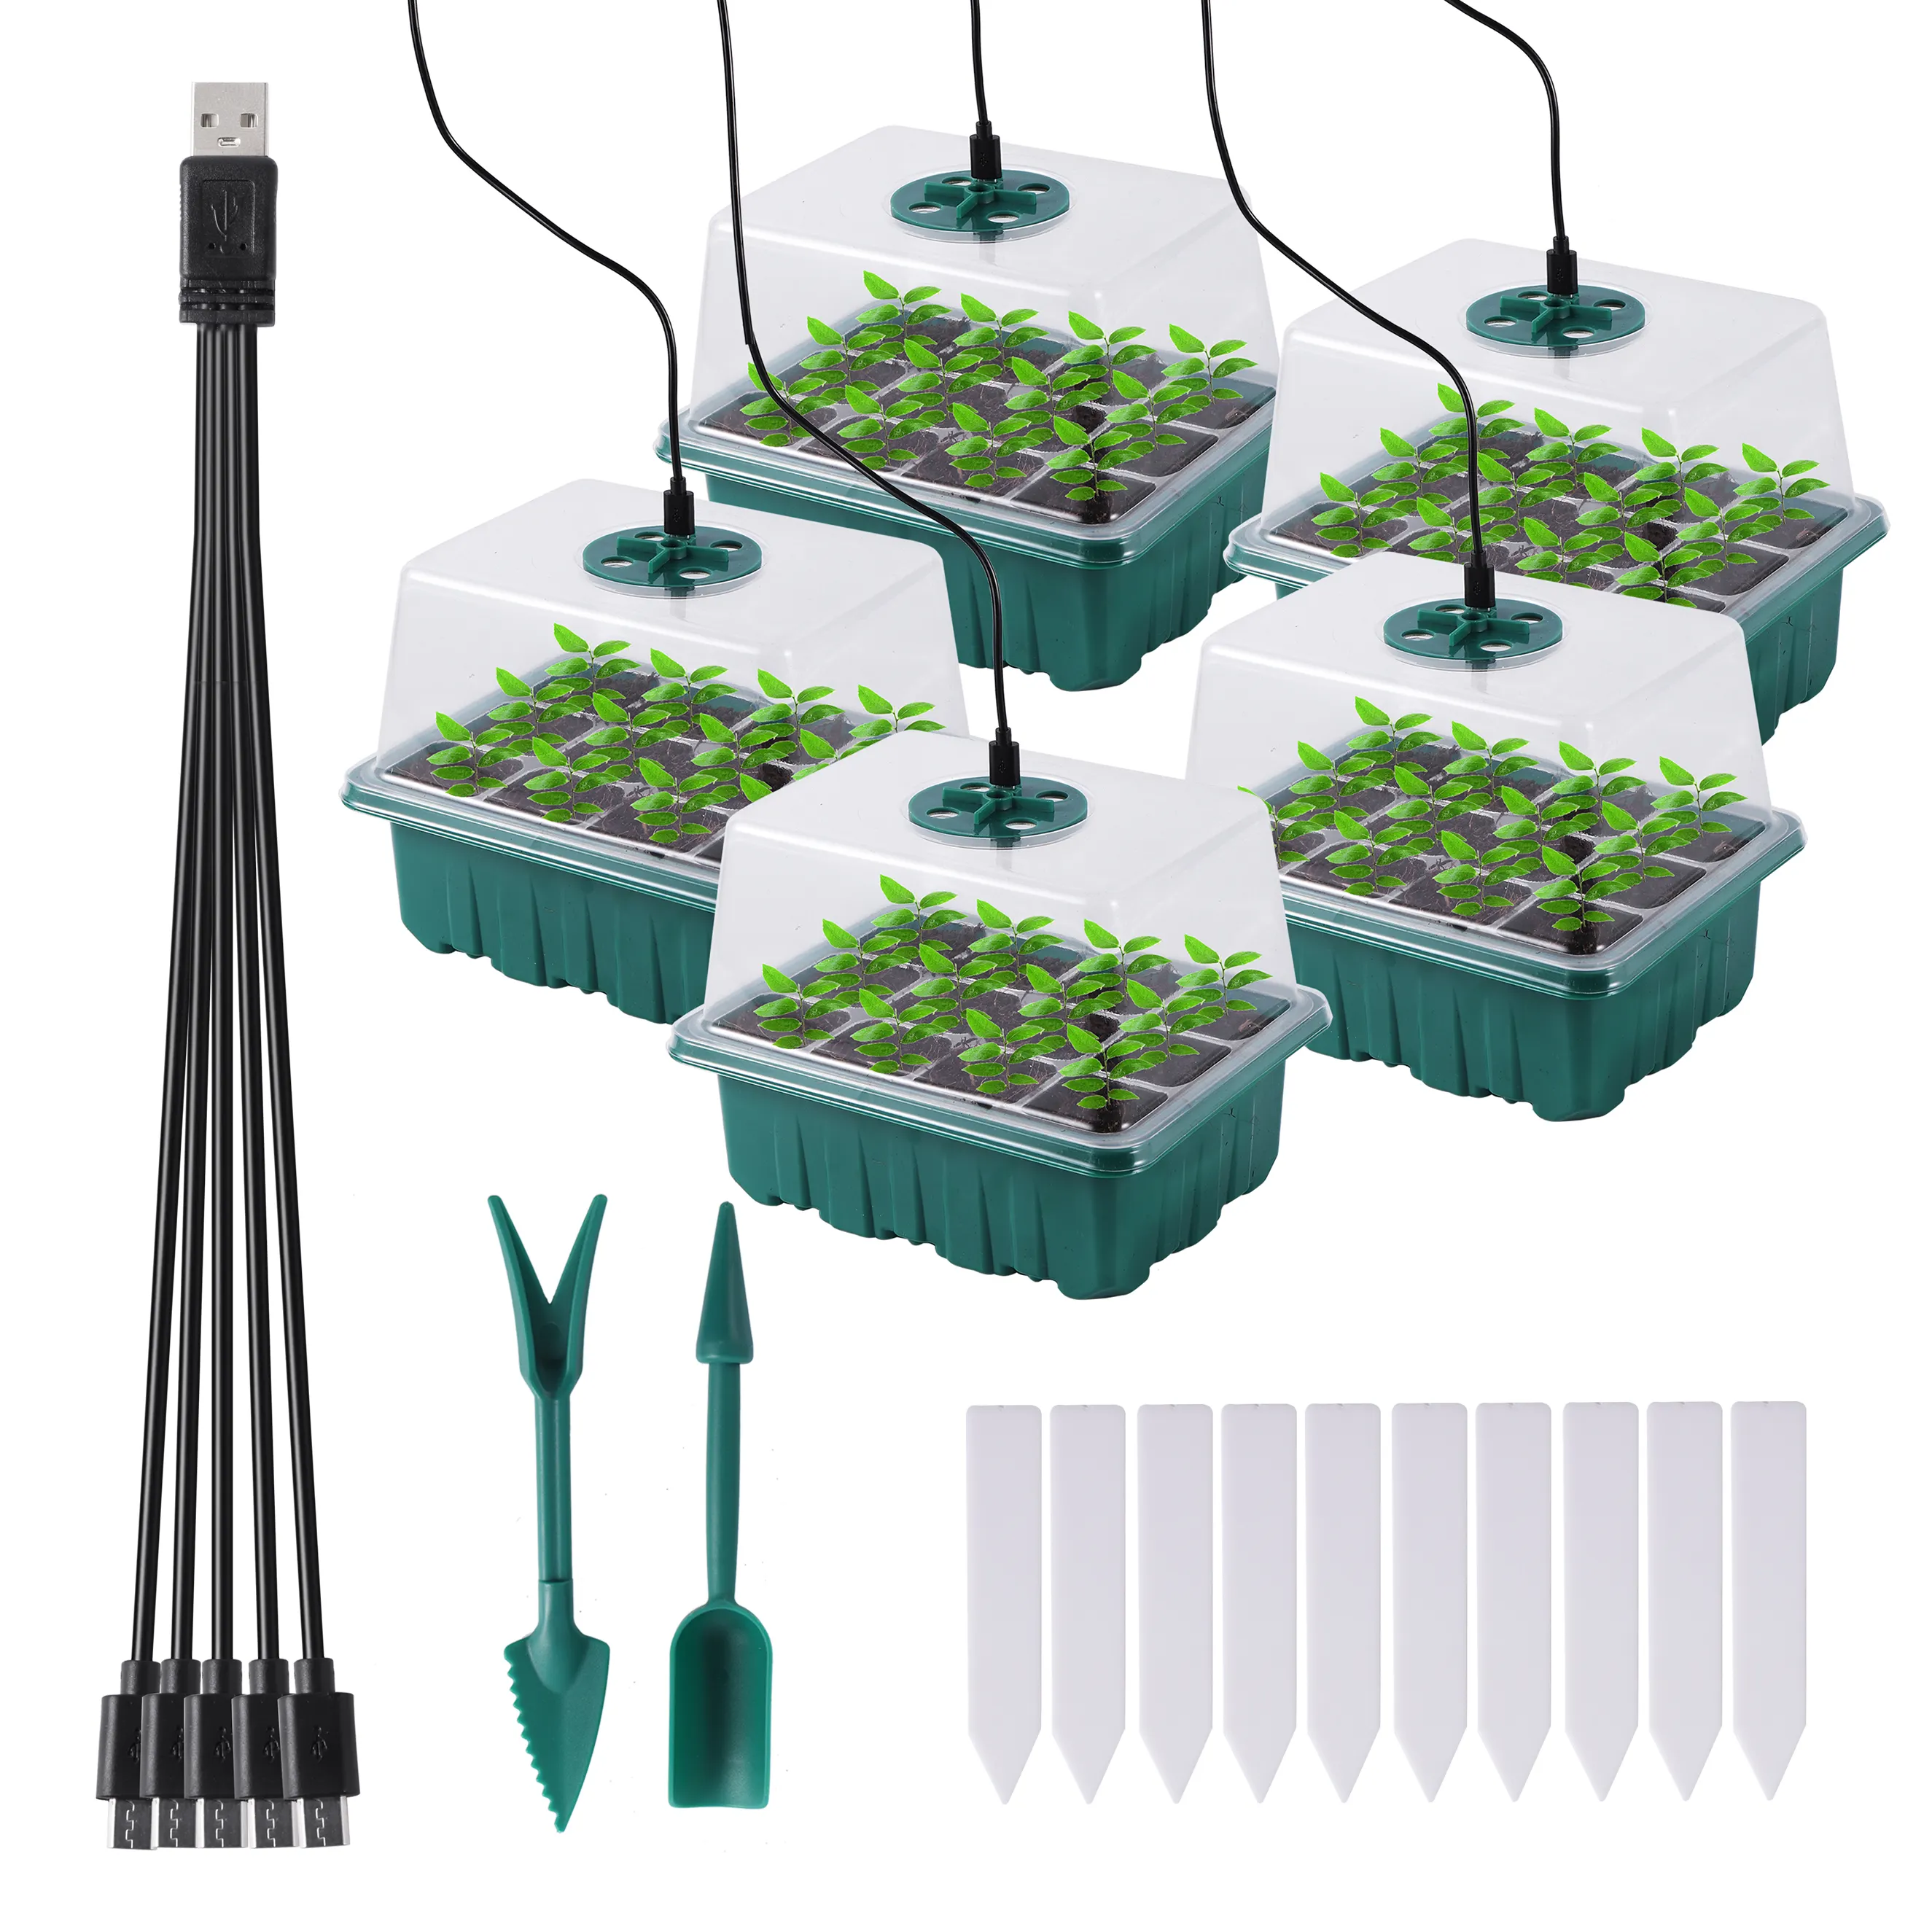 再利用可能な調整可能な排水60細胞種子と成長呼吸ライト植物苗トレイ温室ボックススターターセット